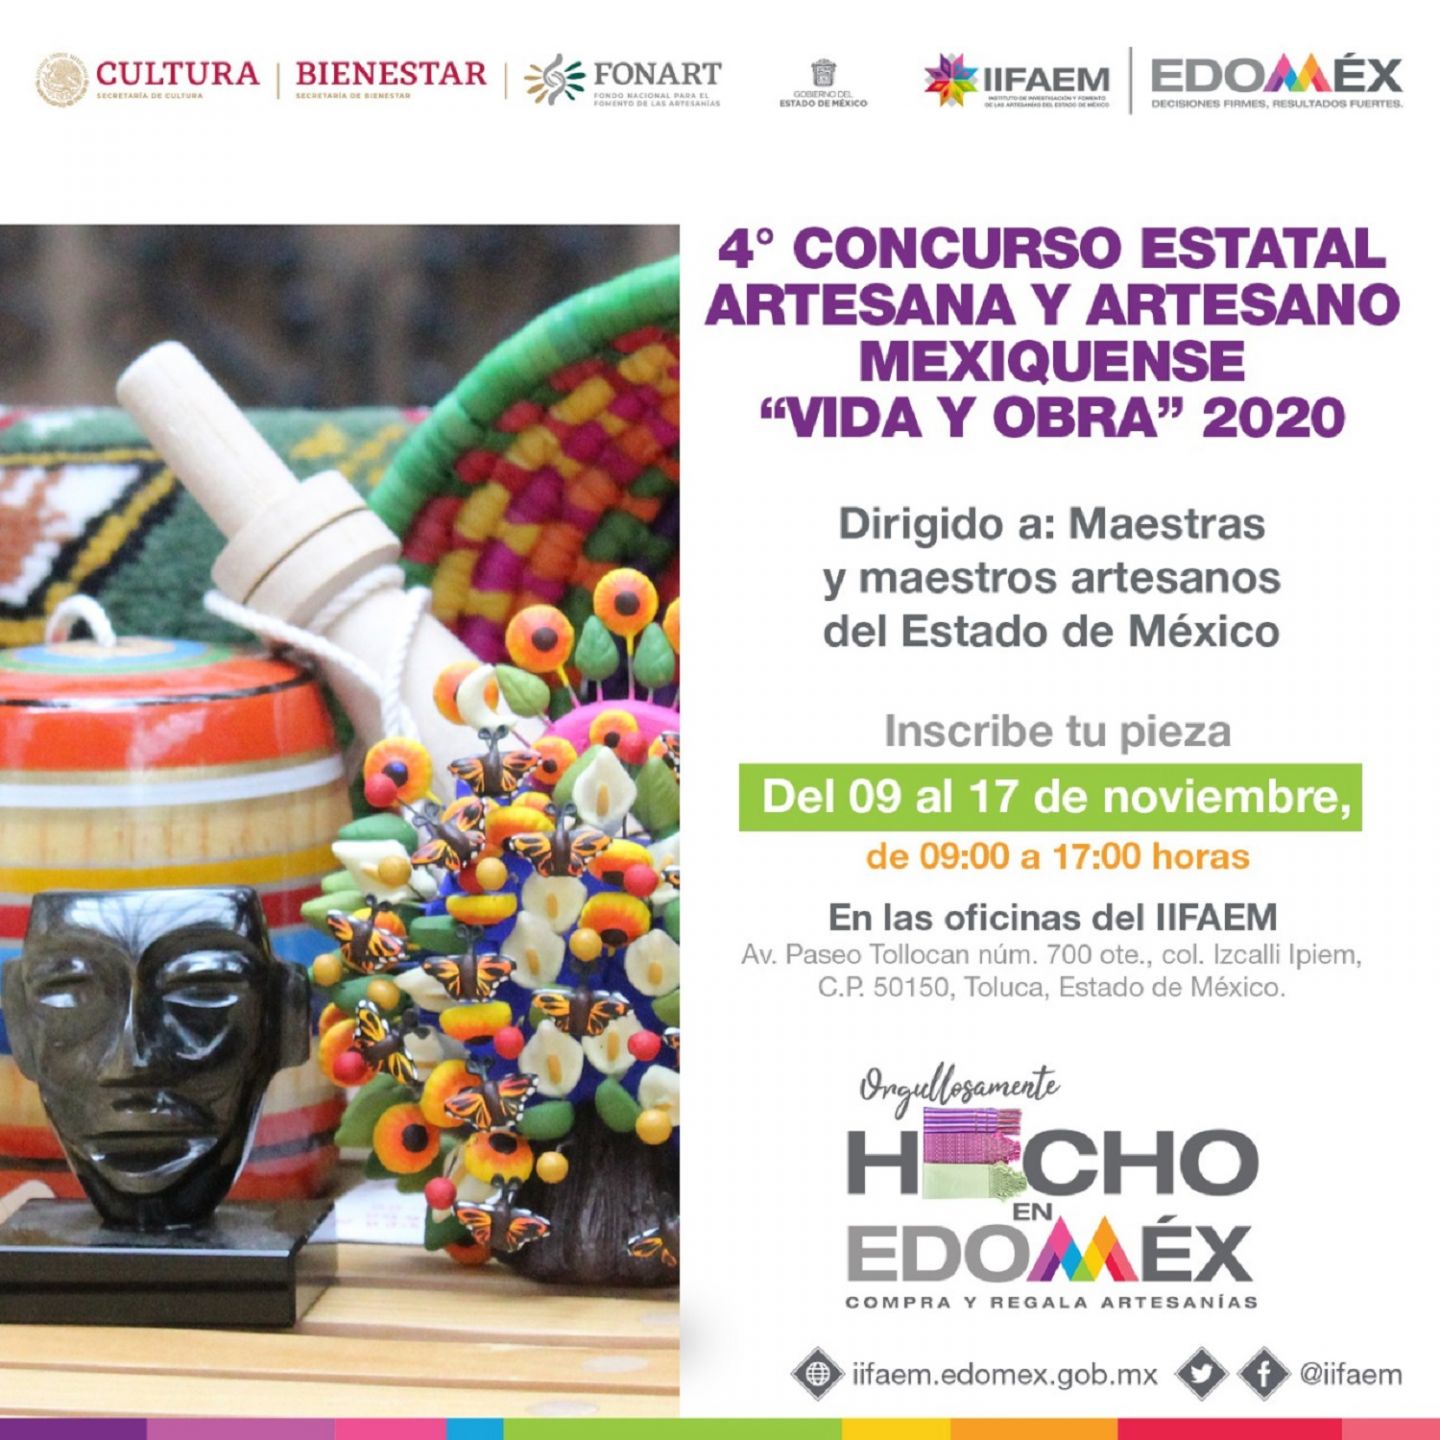 Lanzan convocatoria del cuarto concurso estatal artesano mexiquense "vida y obra" 2020 